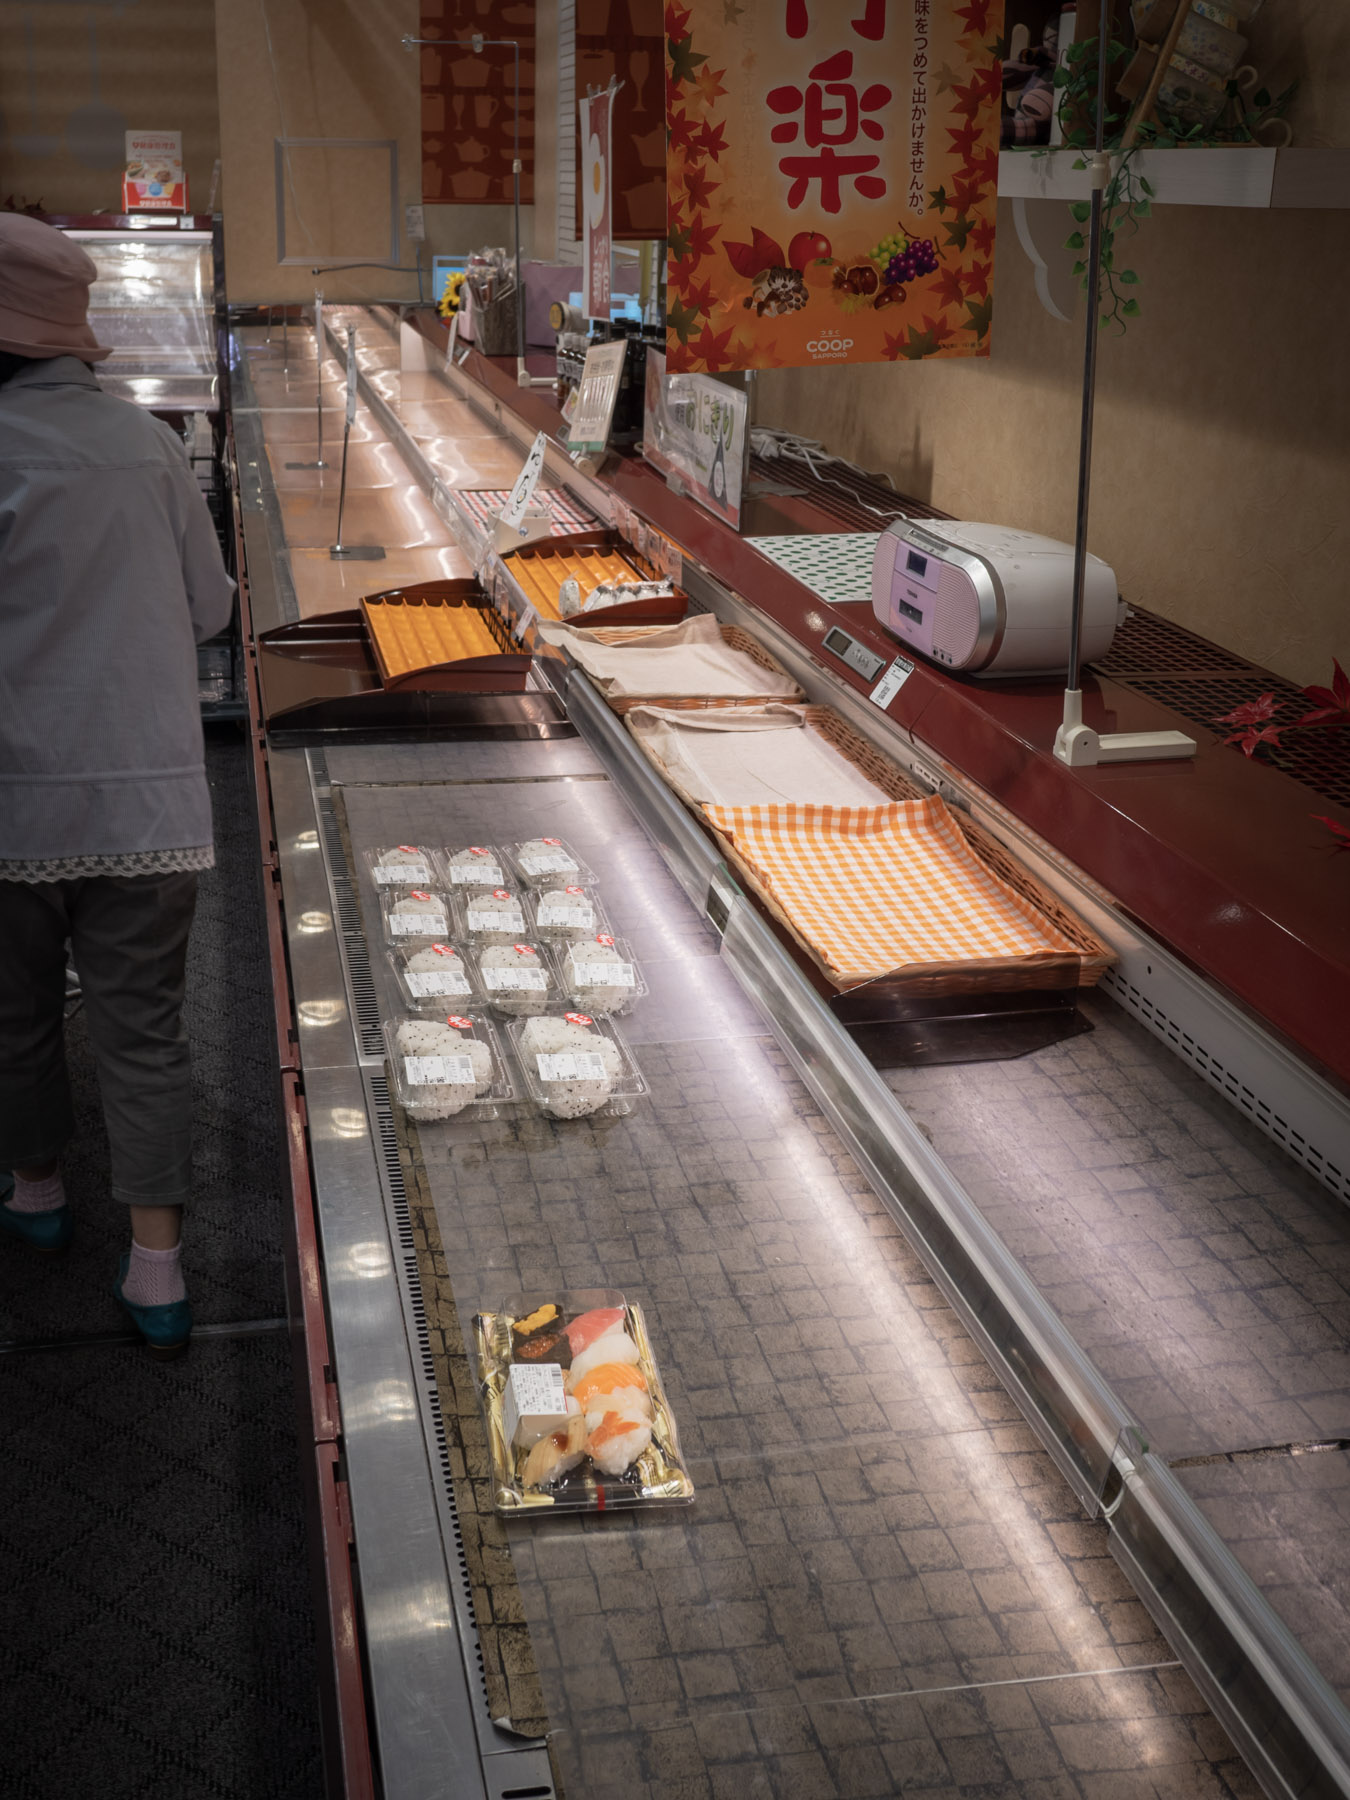 コープさっぽろ石川店の惣菜コーナーにひとつだけ残った握り寿司のパック